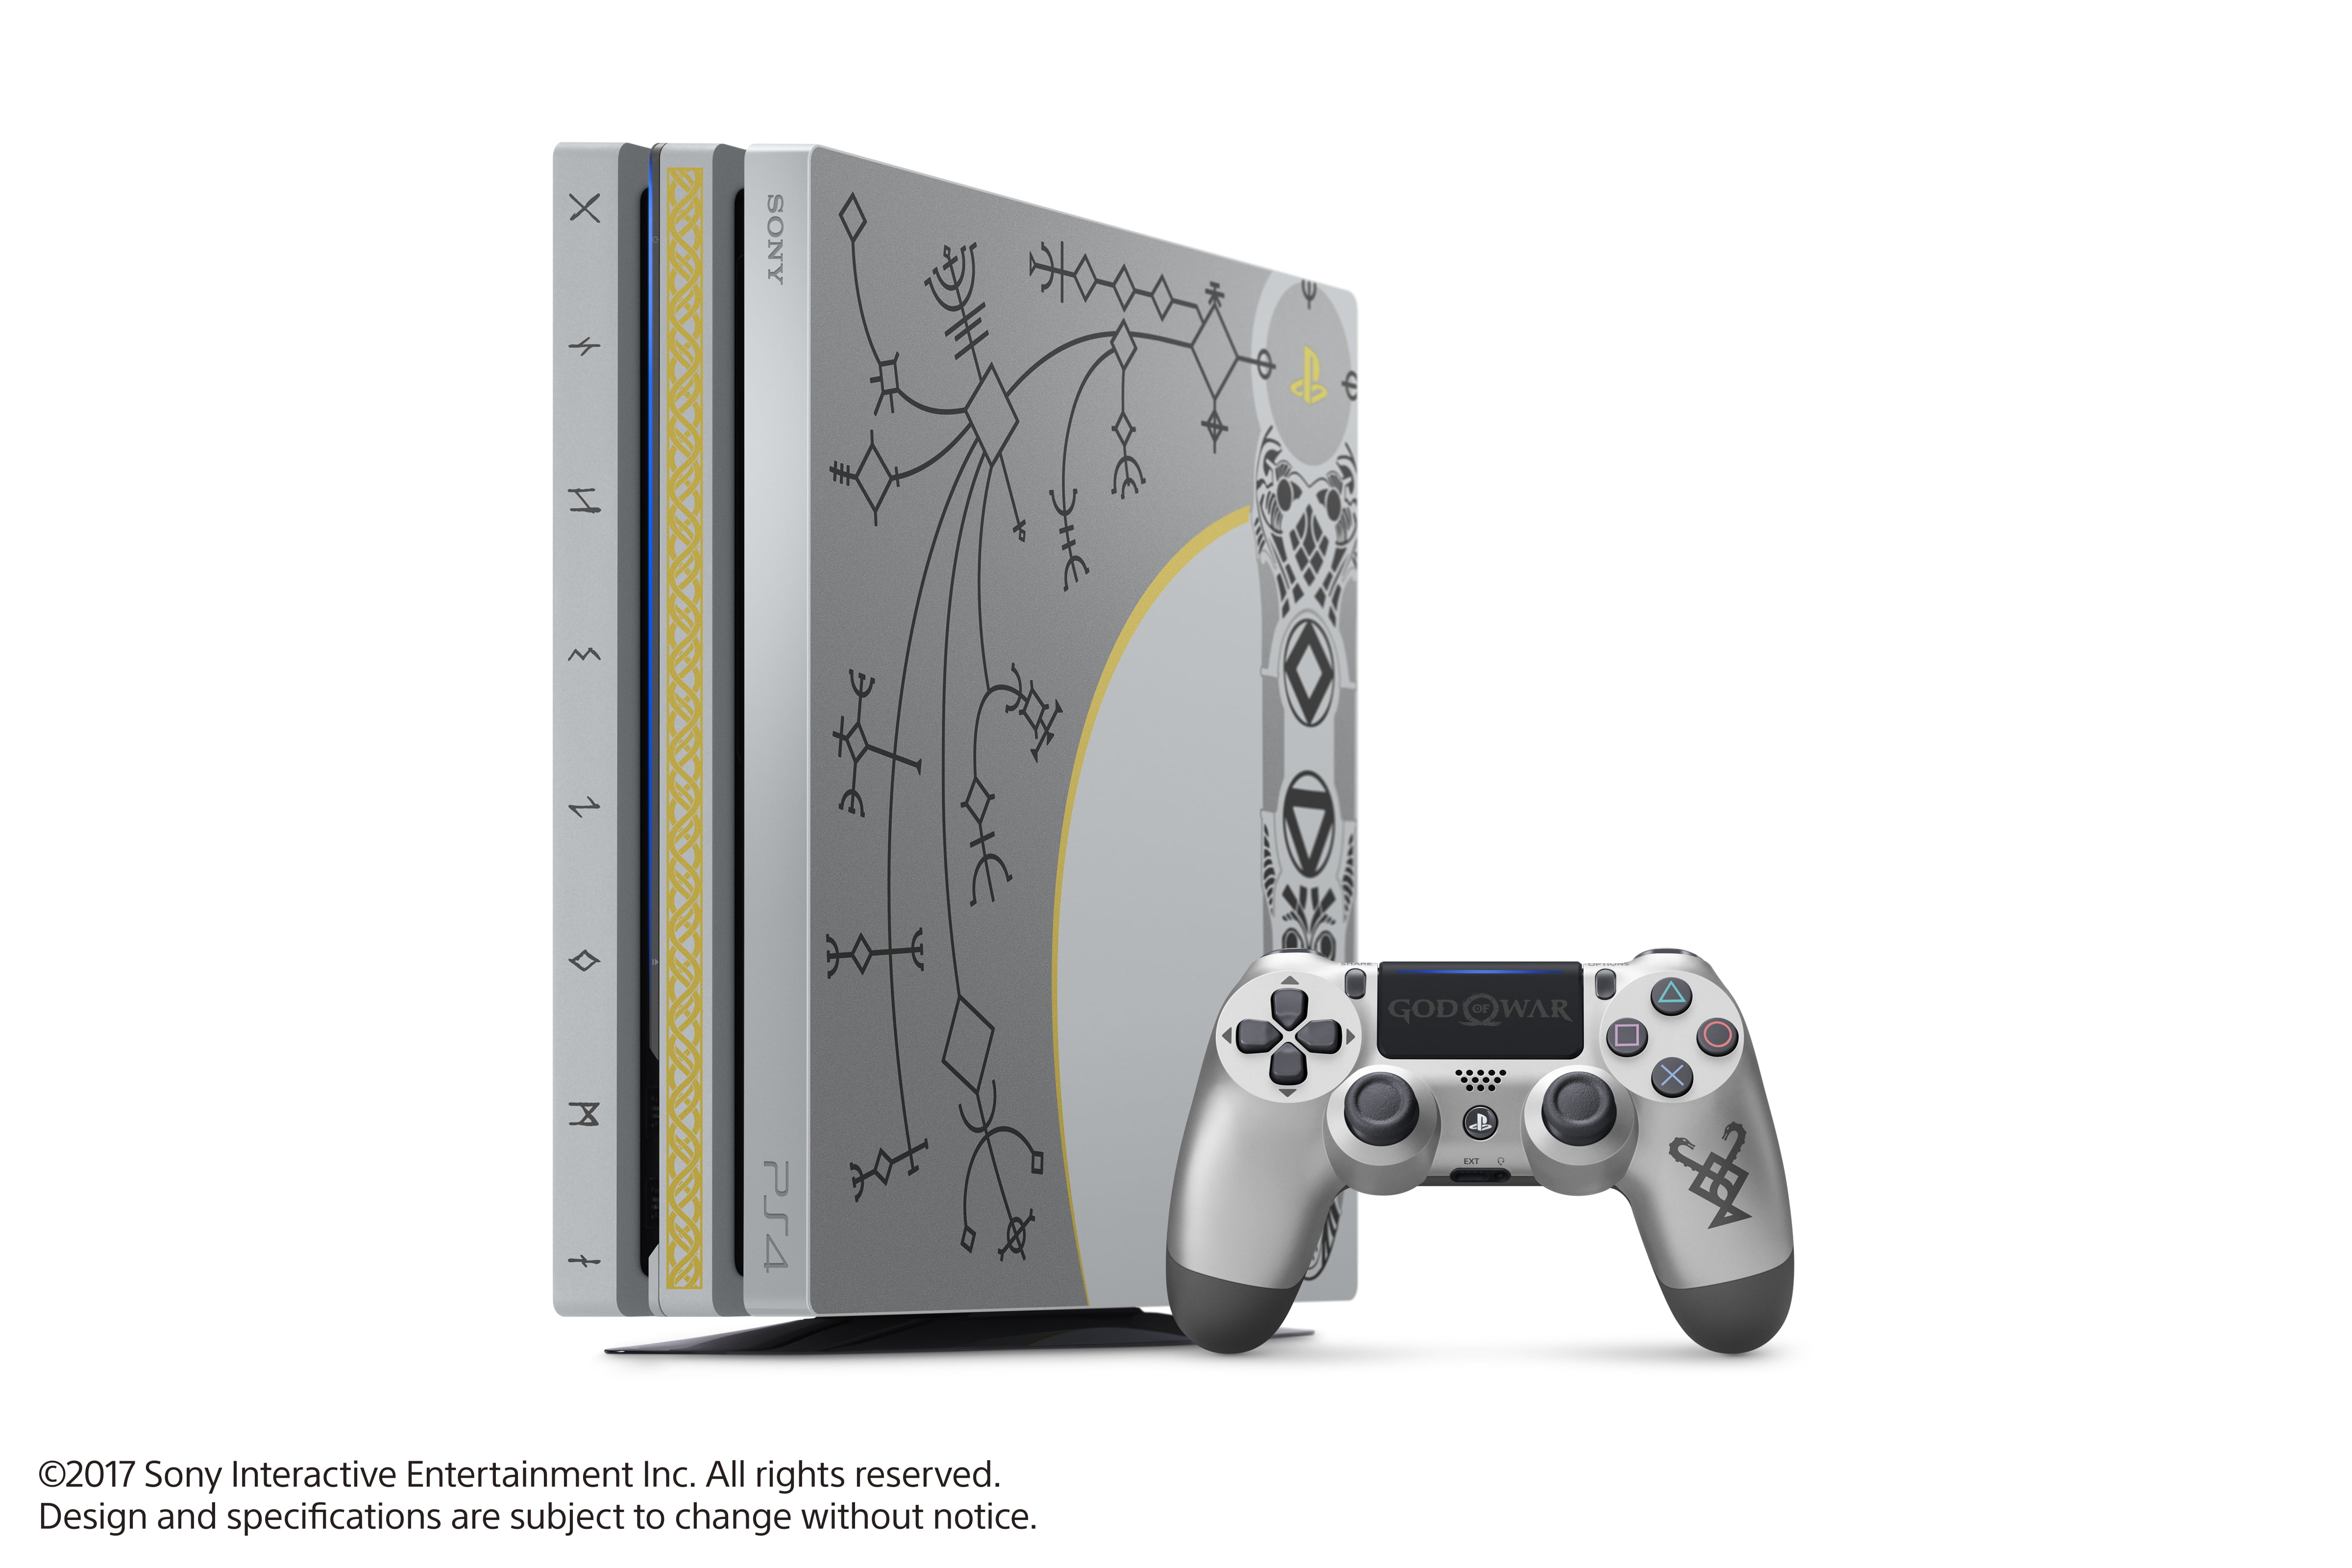 Sony PlayStation 4 Pro 1TB God of War Bundle, CUH-7115B - Walmart.com